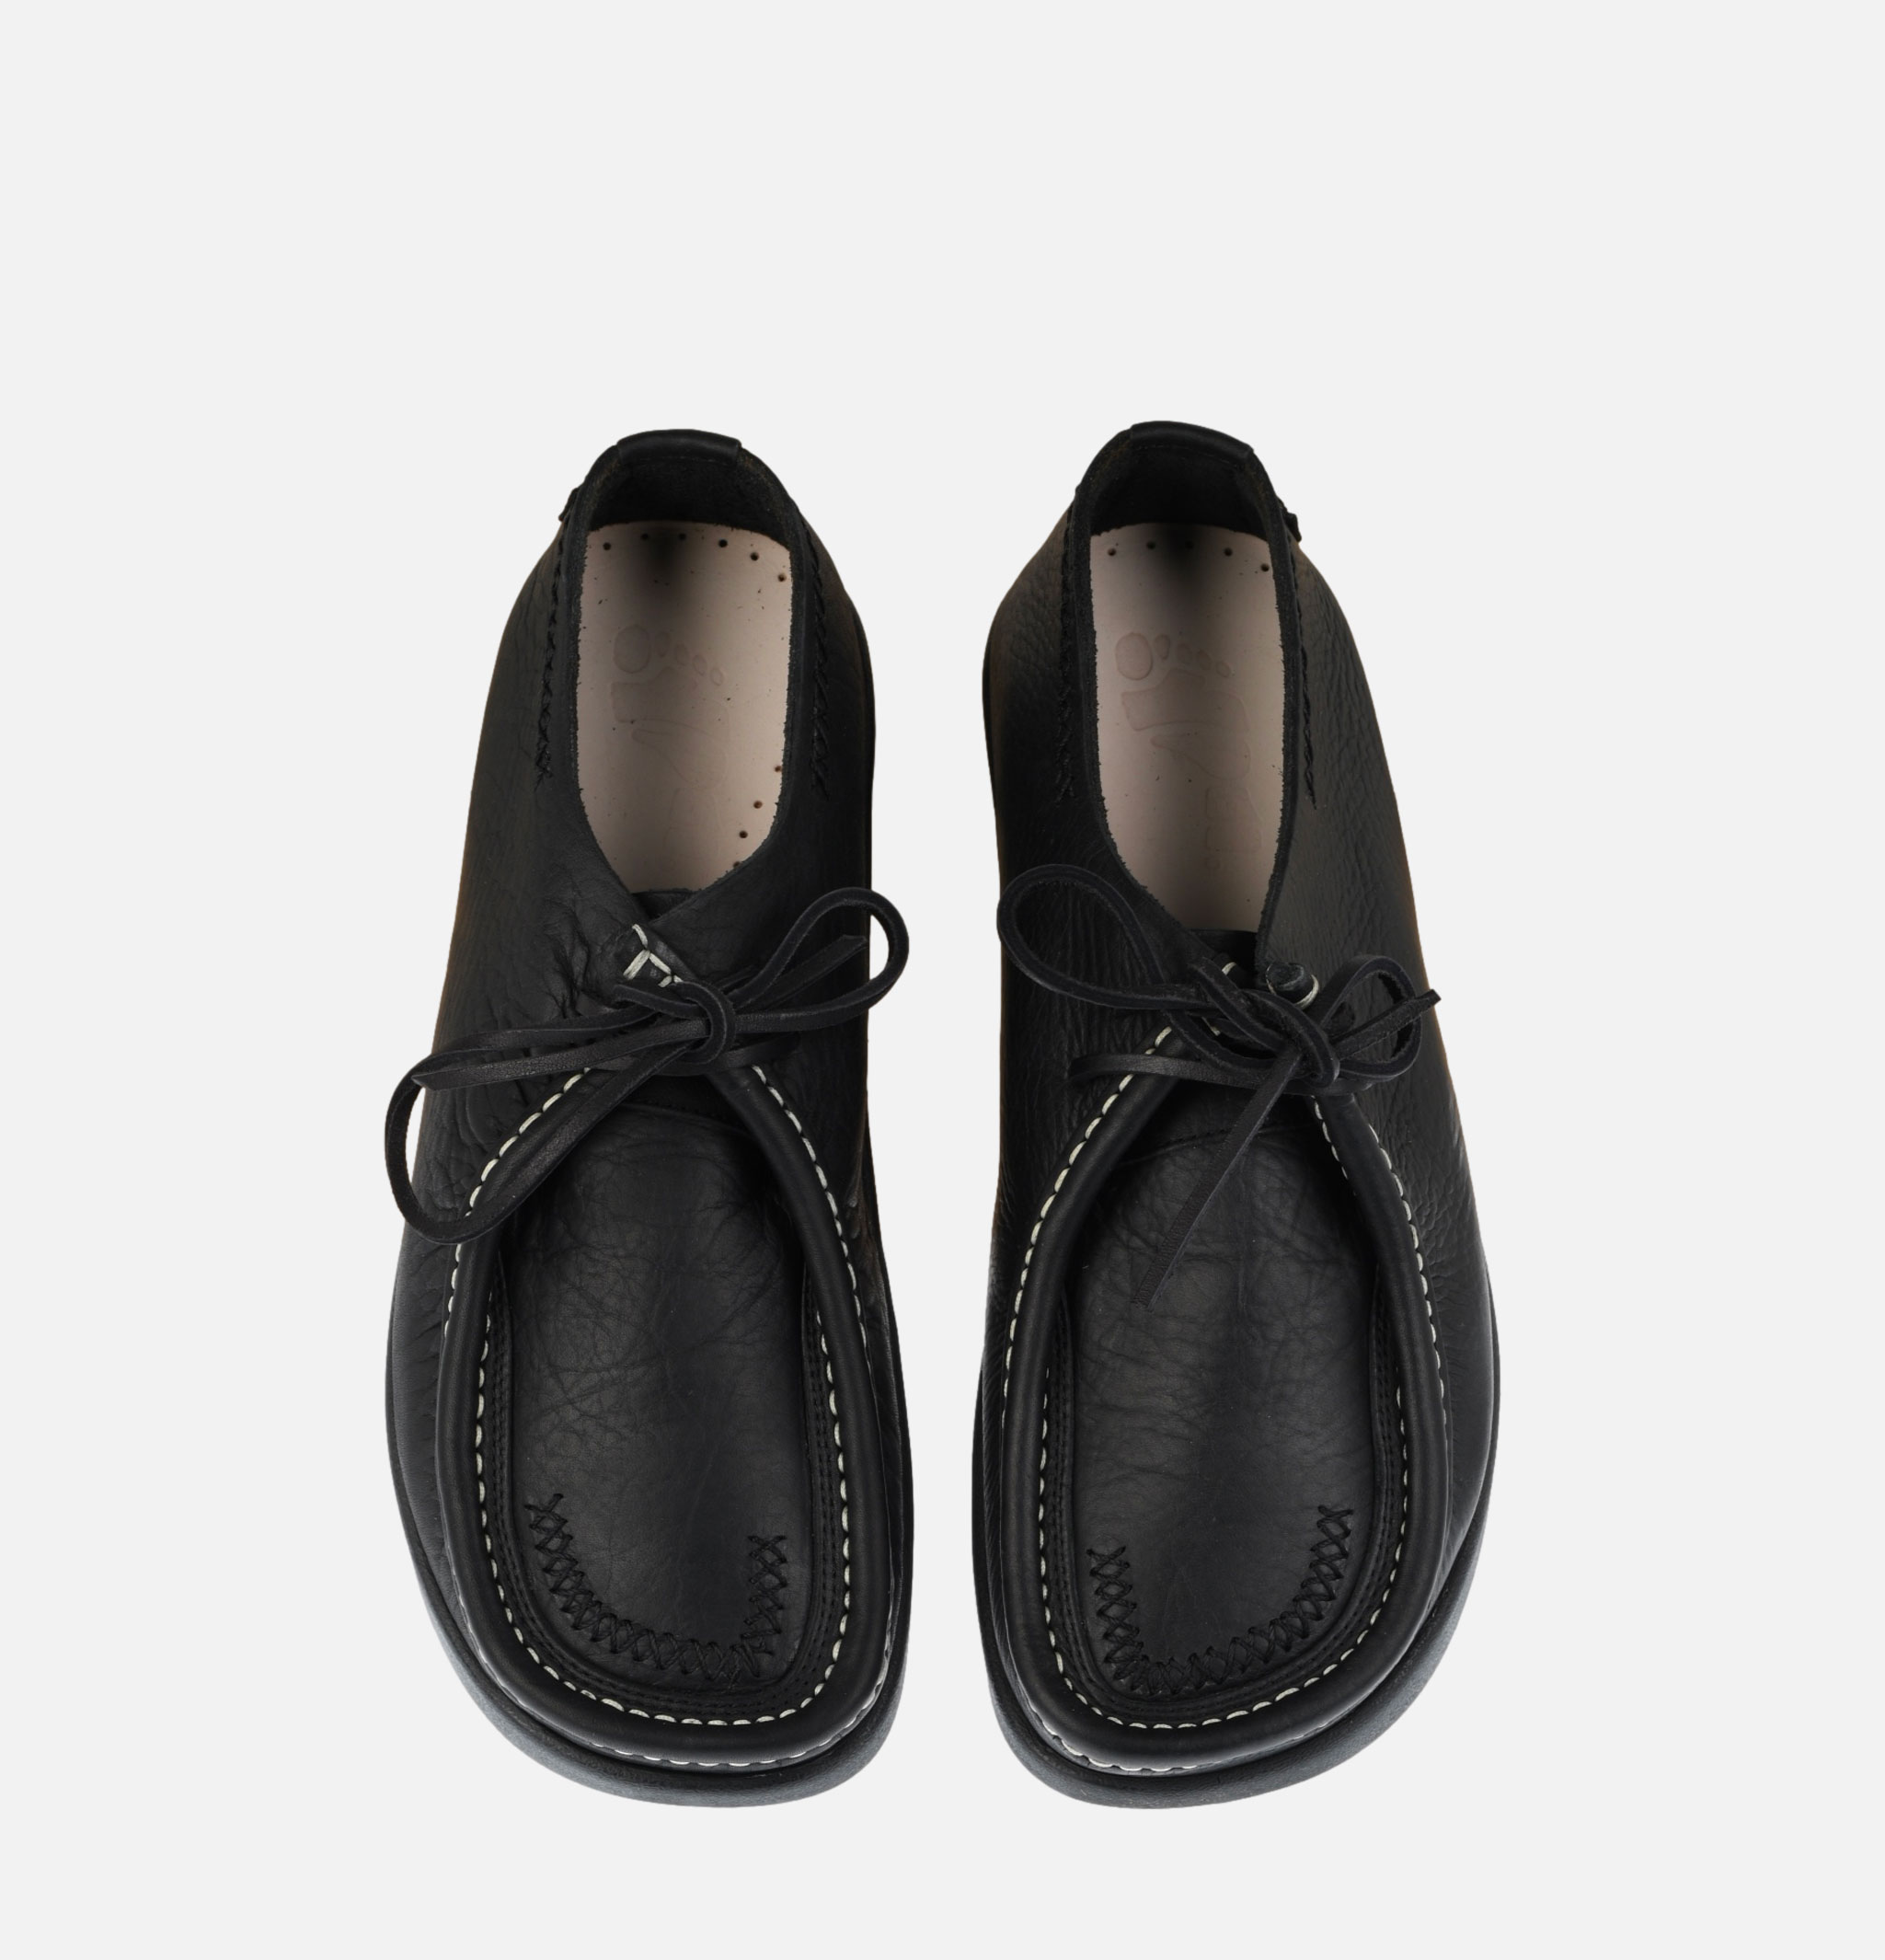 Chaussures Yogi Willard Black